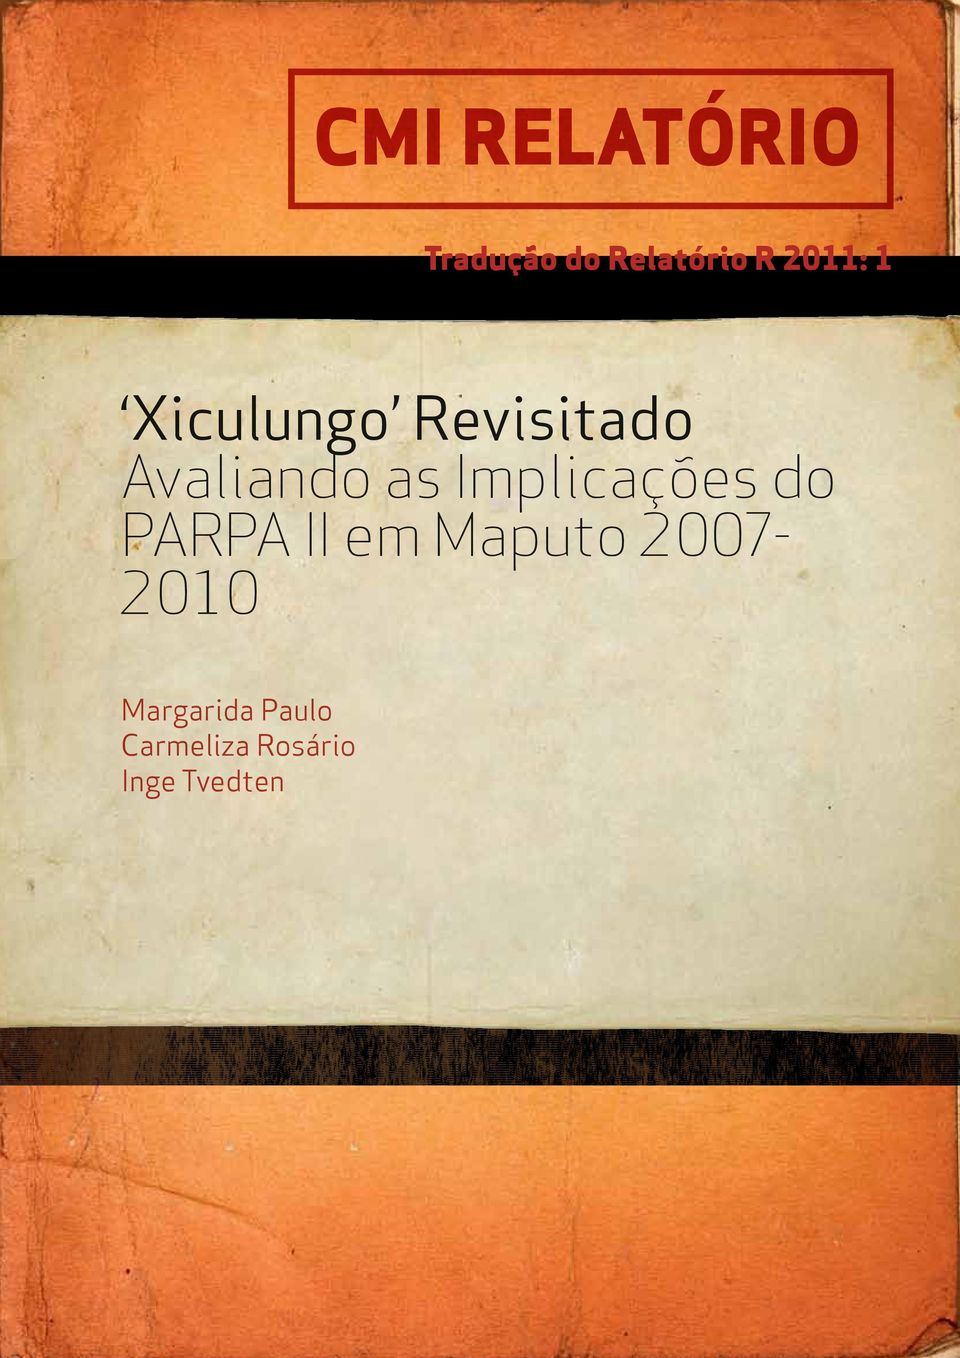 Implicações do PARPA II em Maputo